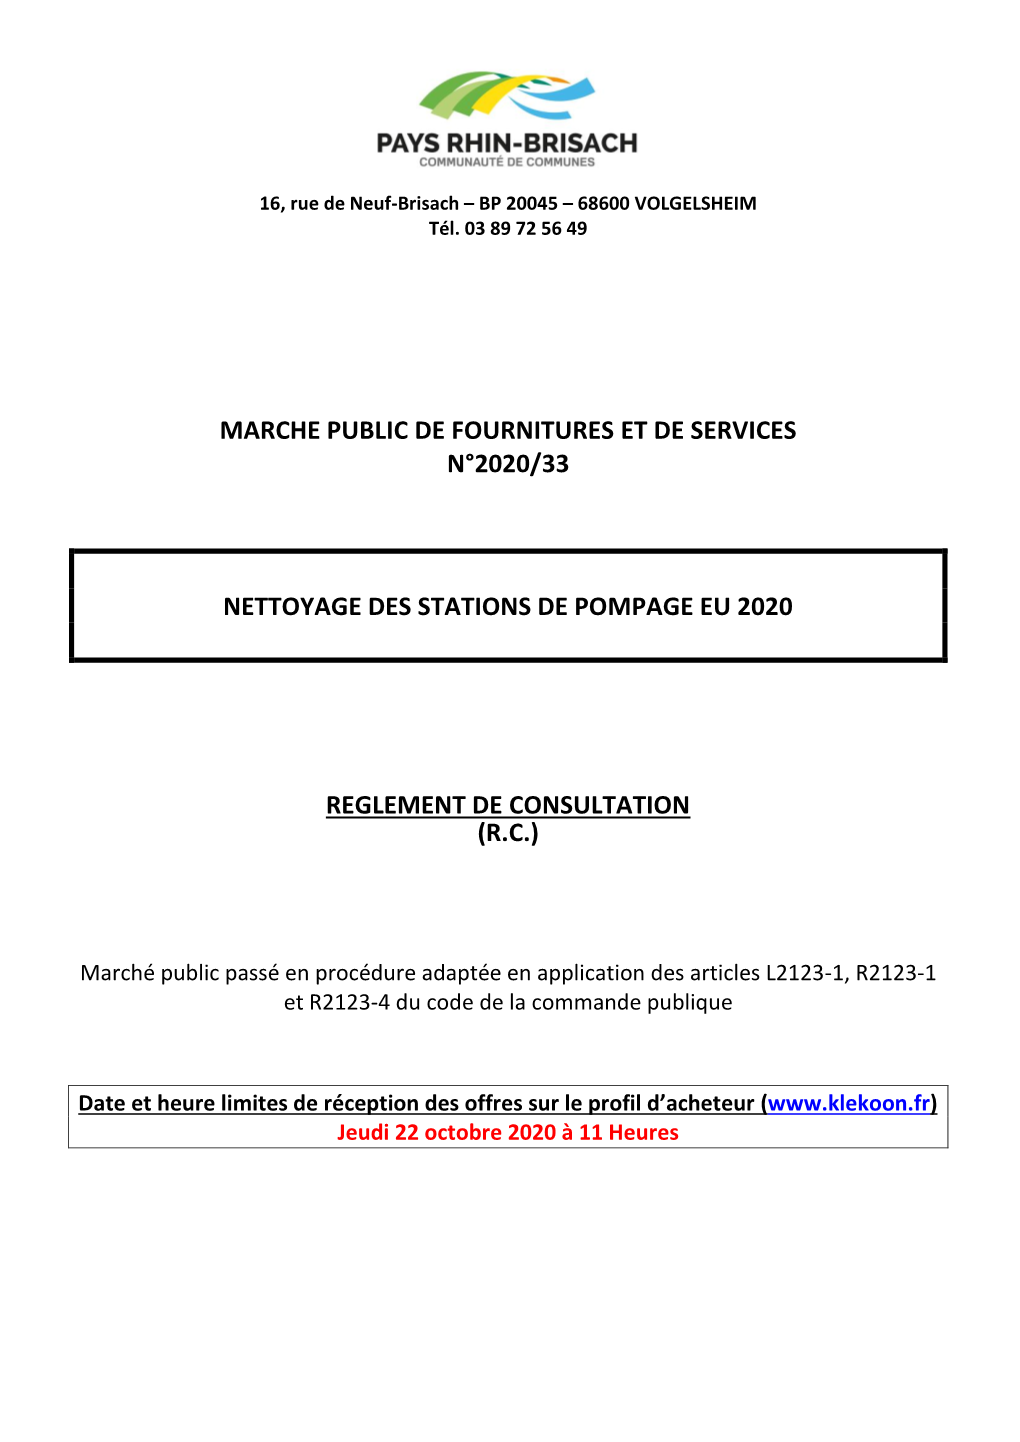 Marche Public De Fournitures Et De Services N°2020/33